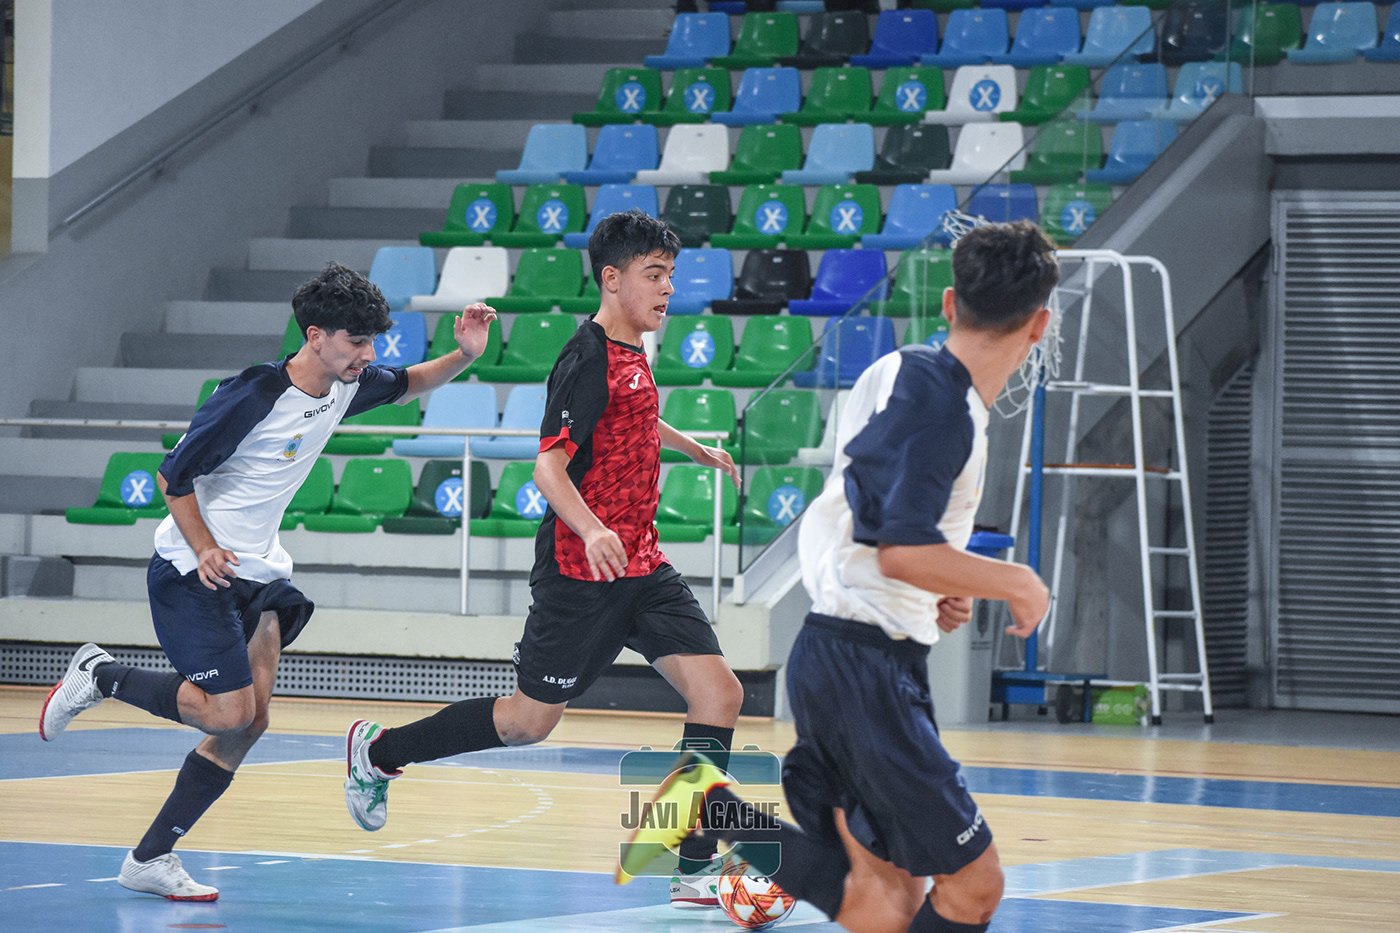 AD Duggi DH Juvenil doctoral Fútbol sala futsal Futsal Juvenil